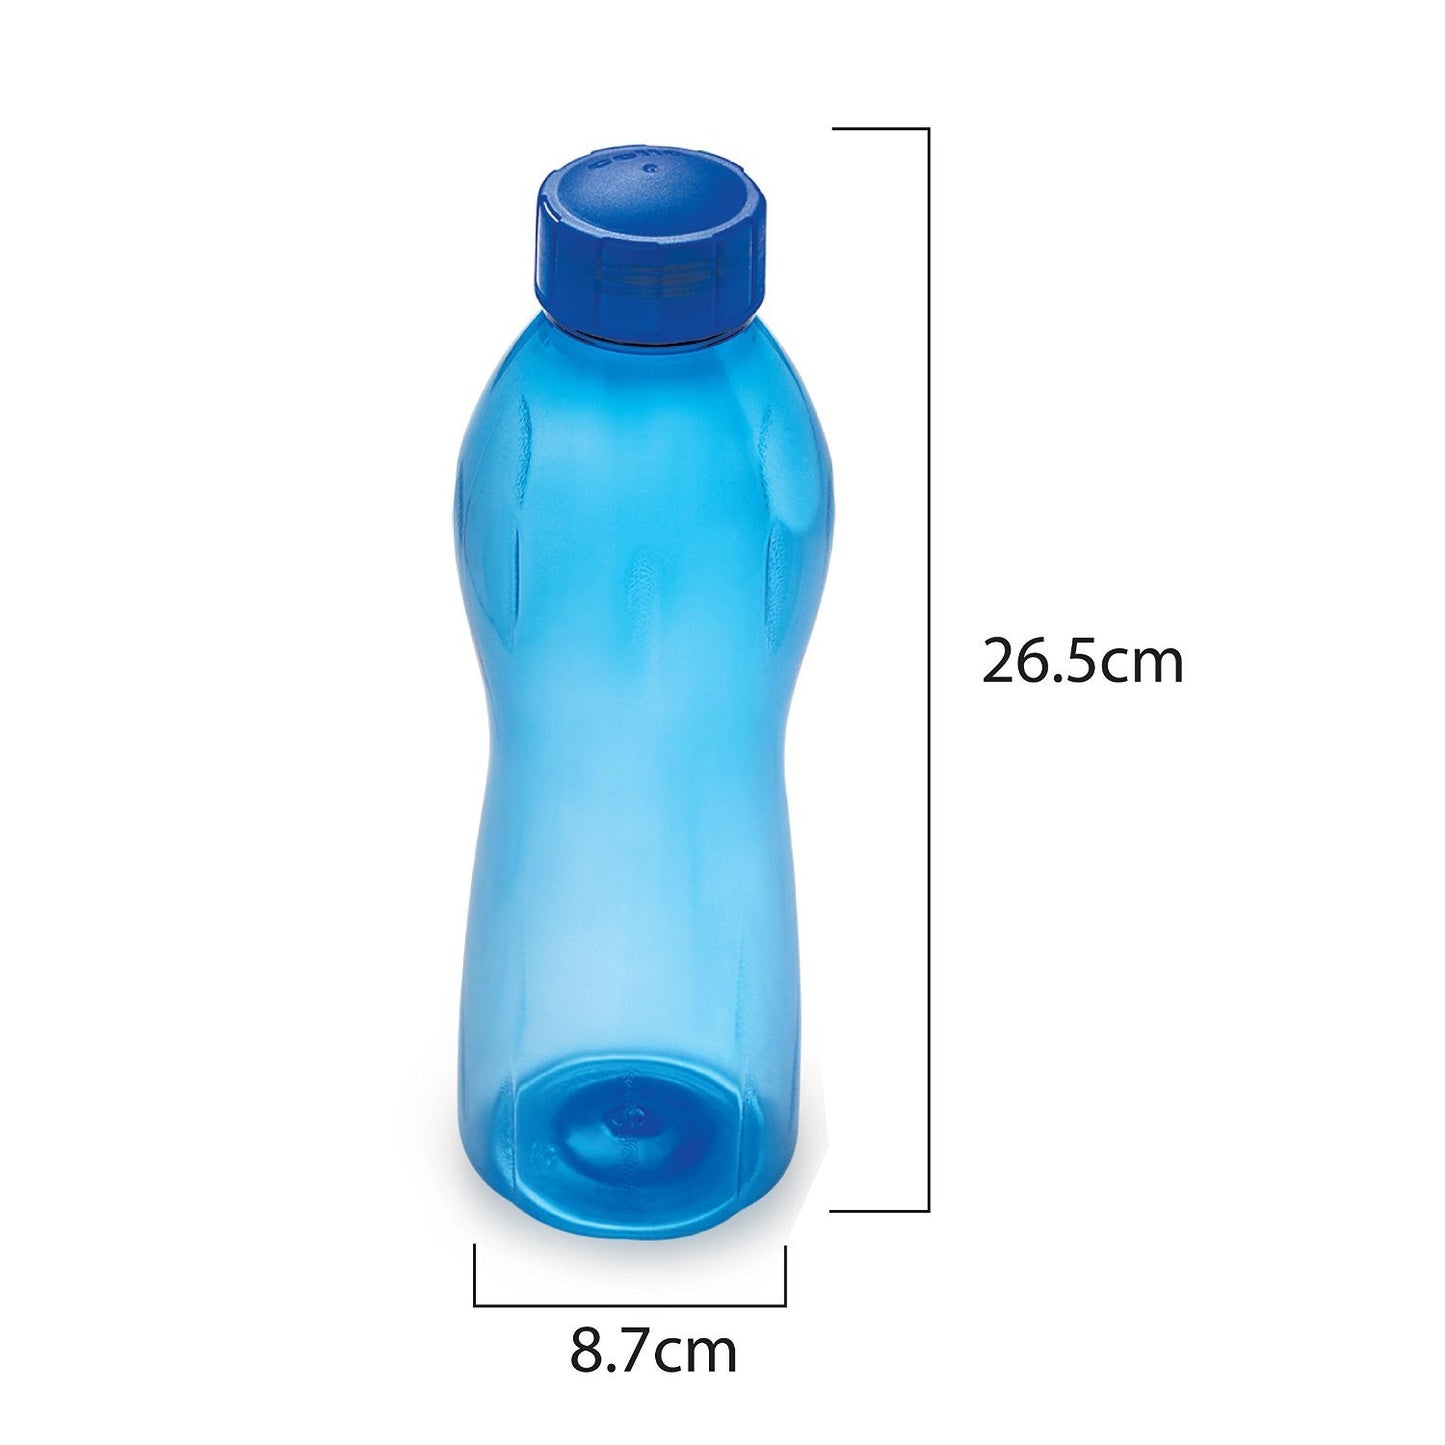 पीईटी बोतल सेट, 1 लीटर, 6 का सेट, नीला